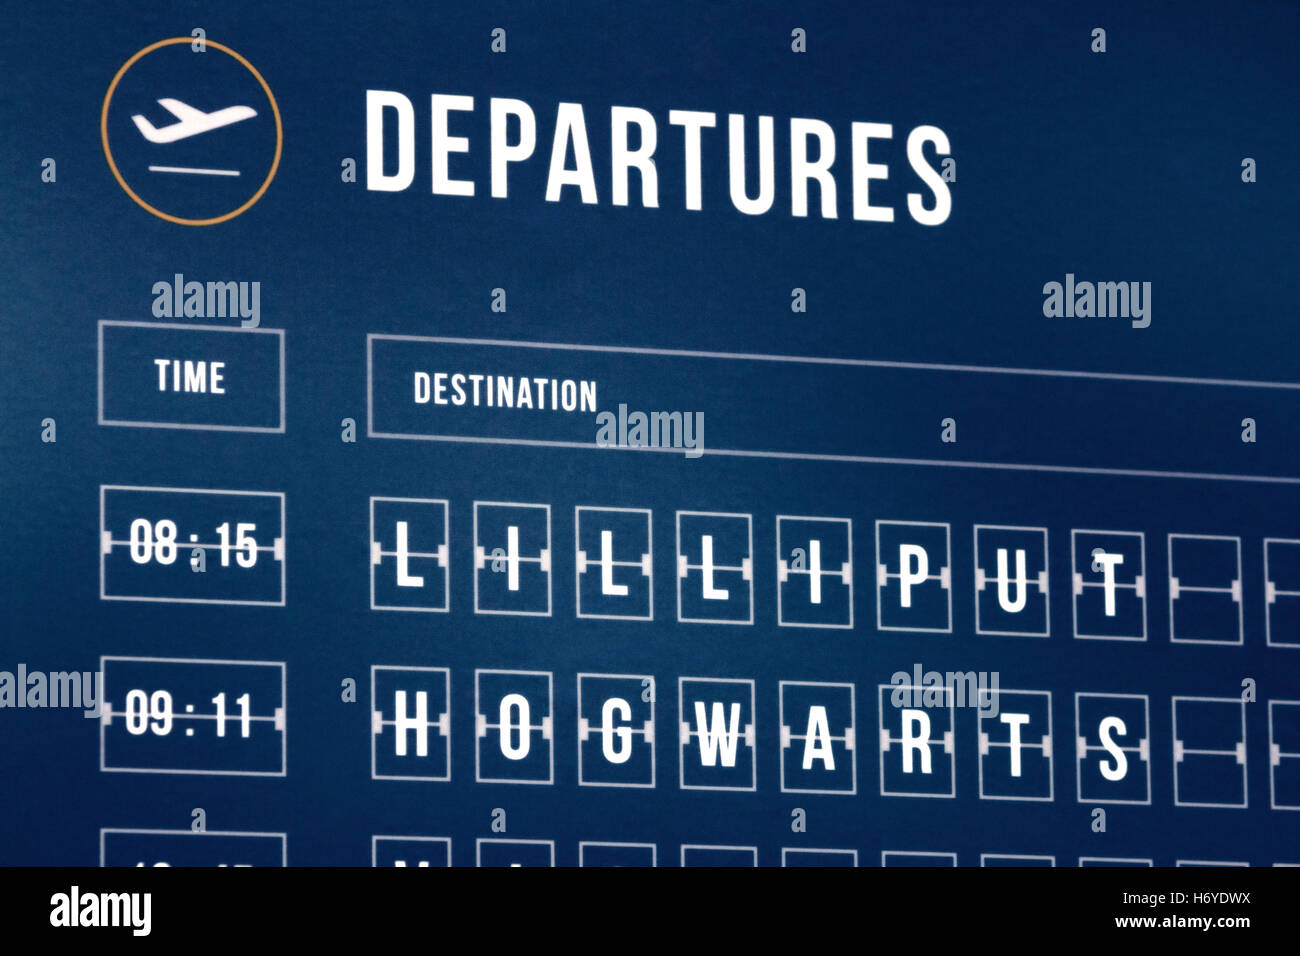 Calendrier des départs d'un aéroport avec lieux fictifs (Lilliput et Poudlard) Banque D'Images